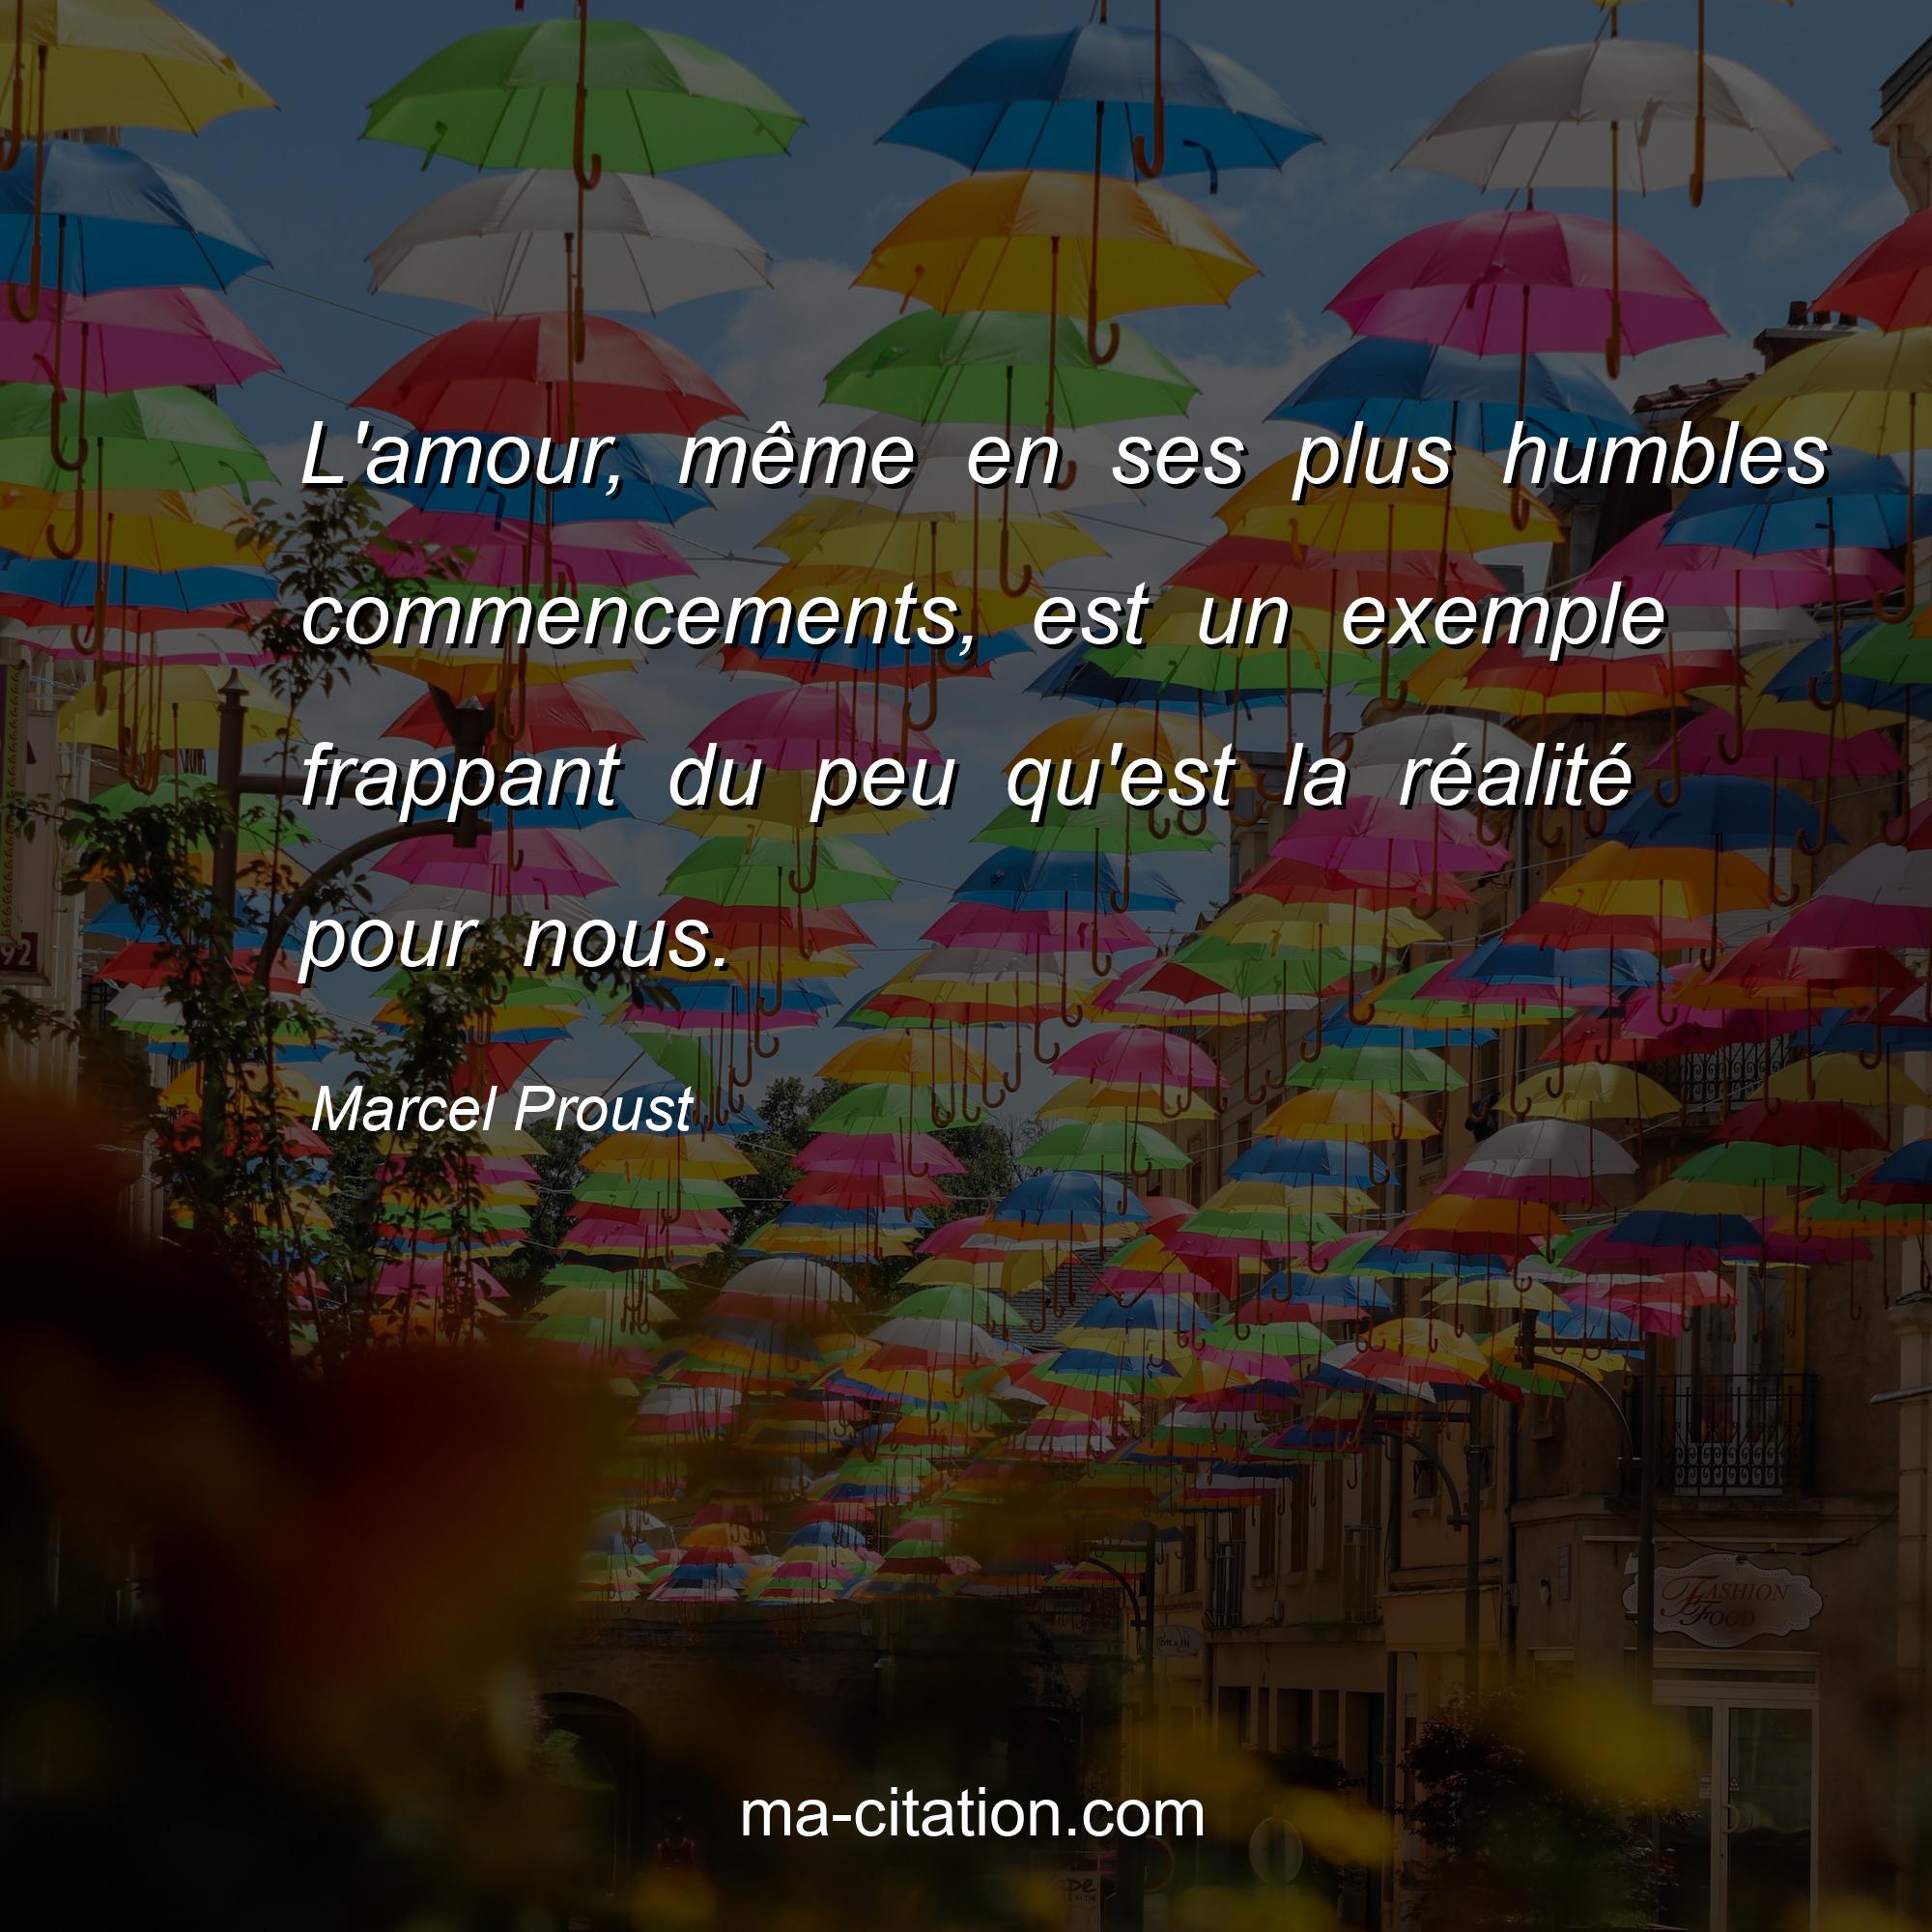 Marcel Proust : L'amour, même en ses plus humbles commencements, est un exemple frappant du peu qu'est la réalité pour nous.